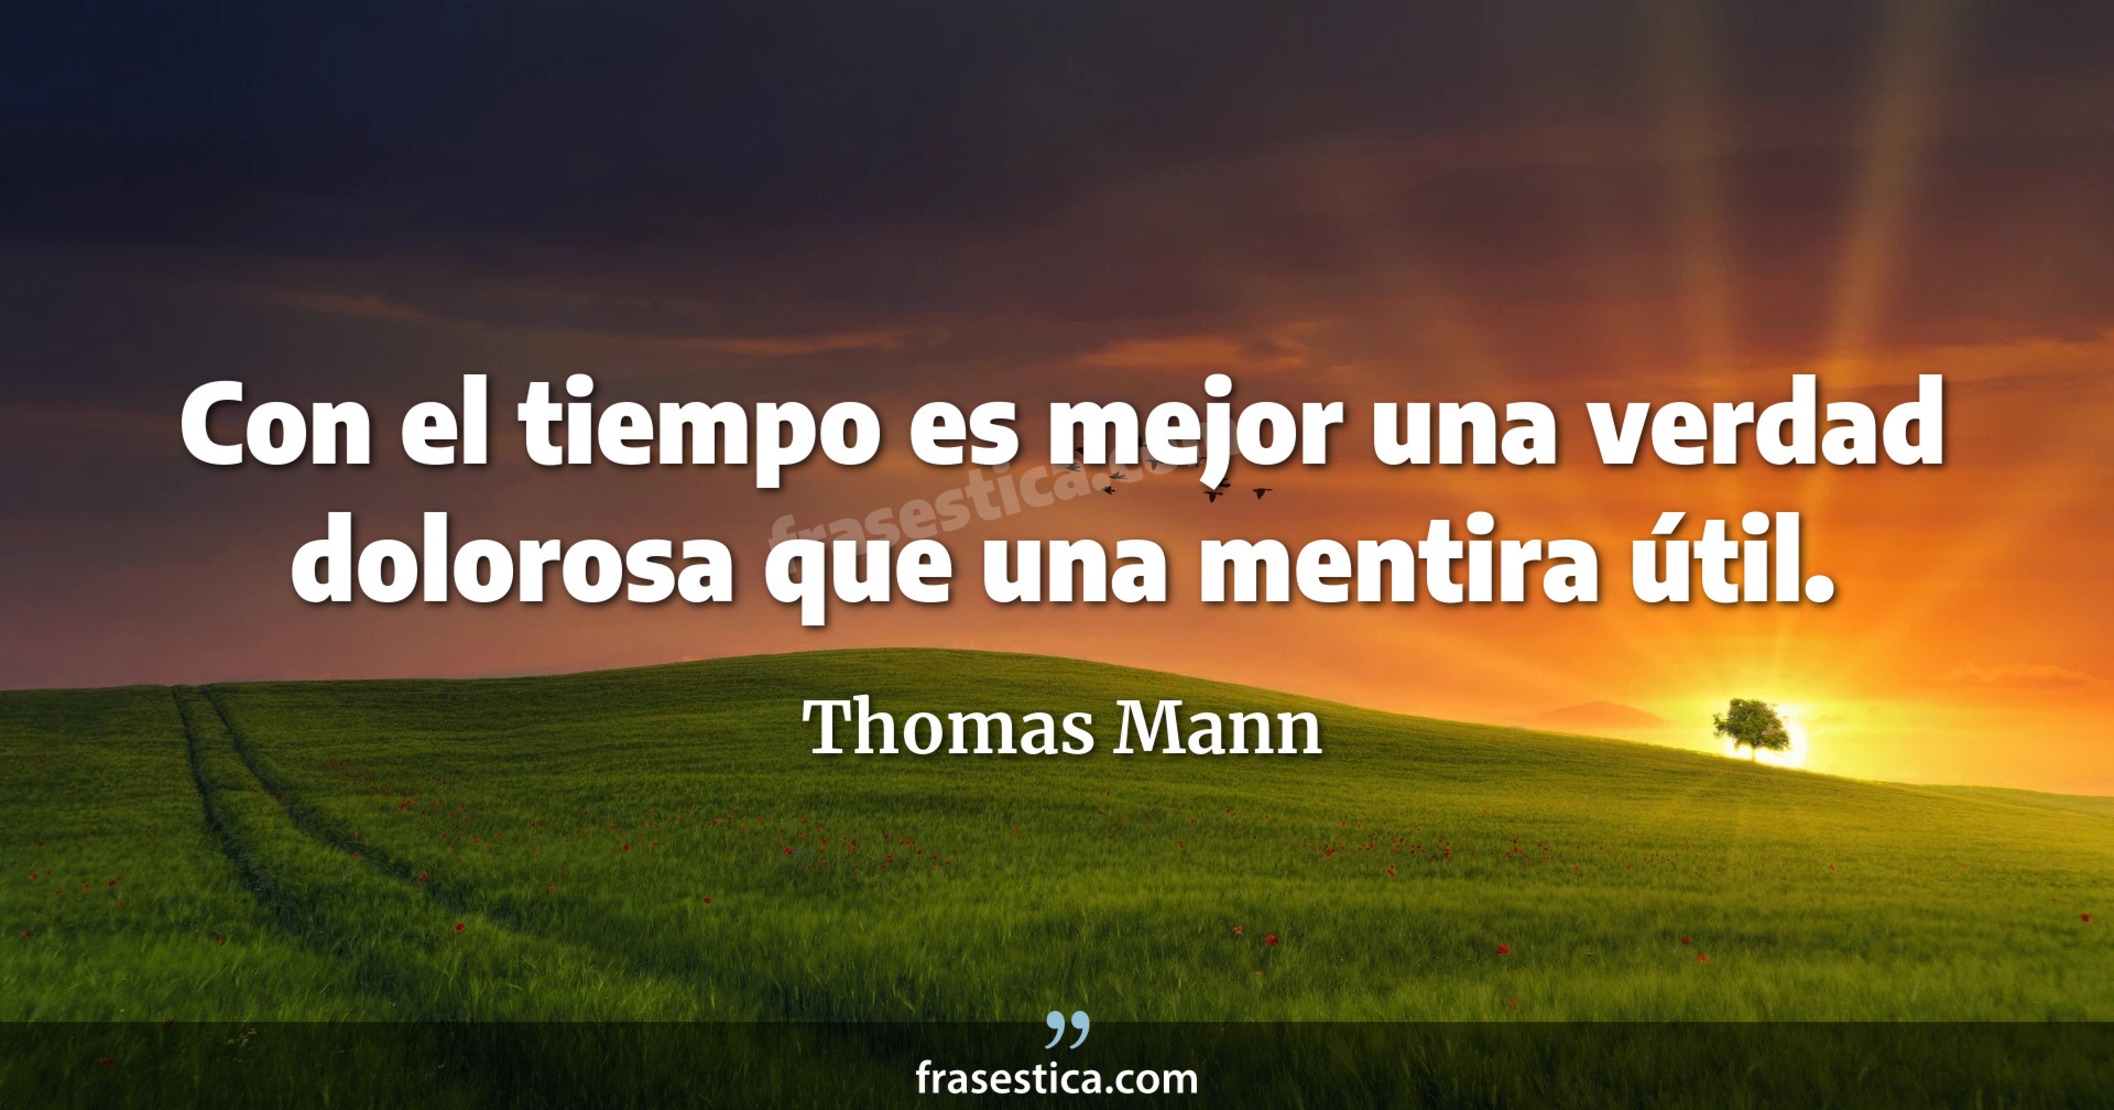 Con el tiempo es mejor una verdad dolorosa que una mentira útil. - Thomas Mann